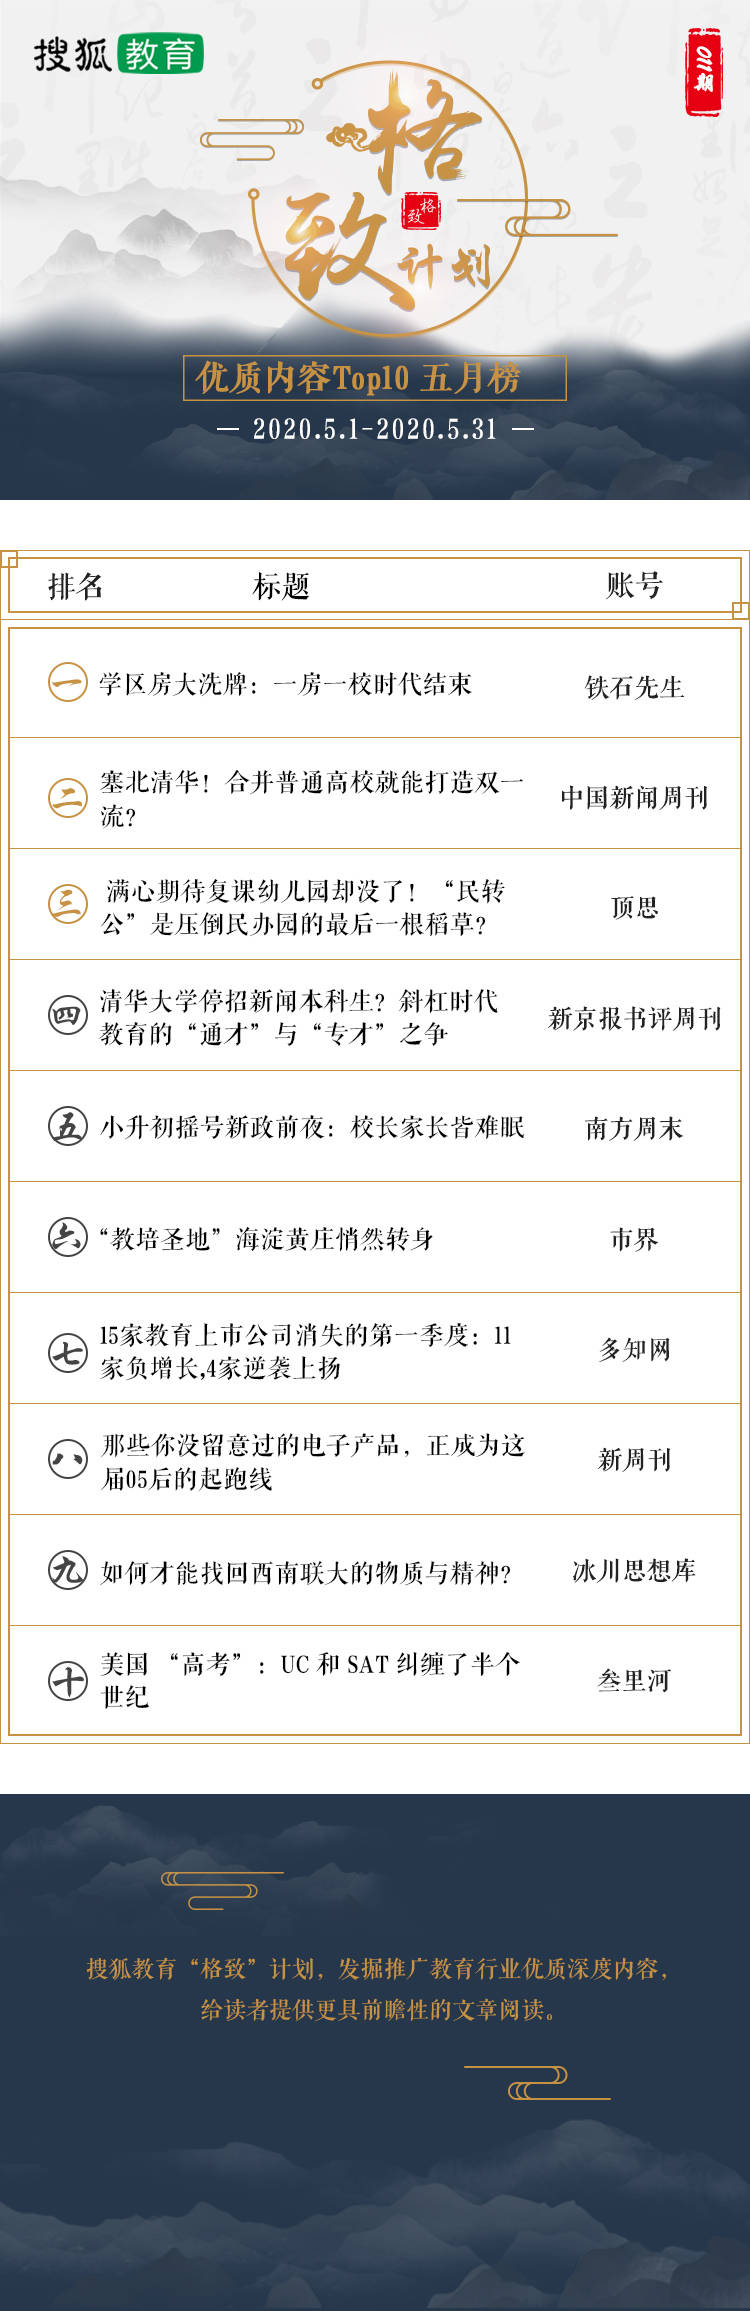 原创哪些文章点击量高？搜狐教育“格致”计划5月Top10内容榜单发布